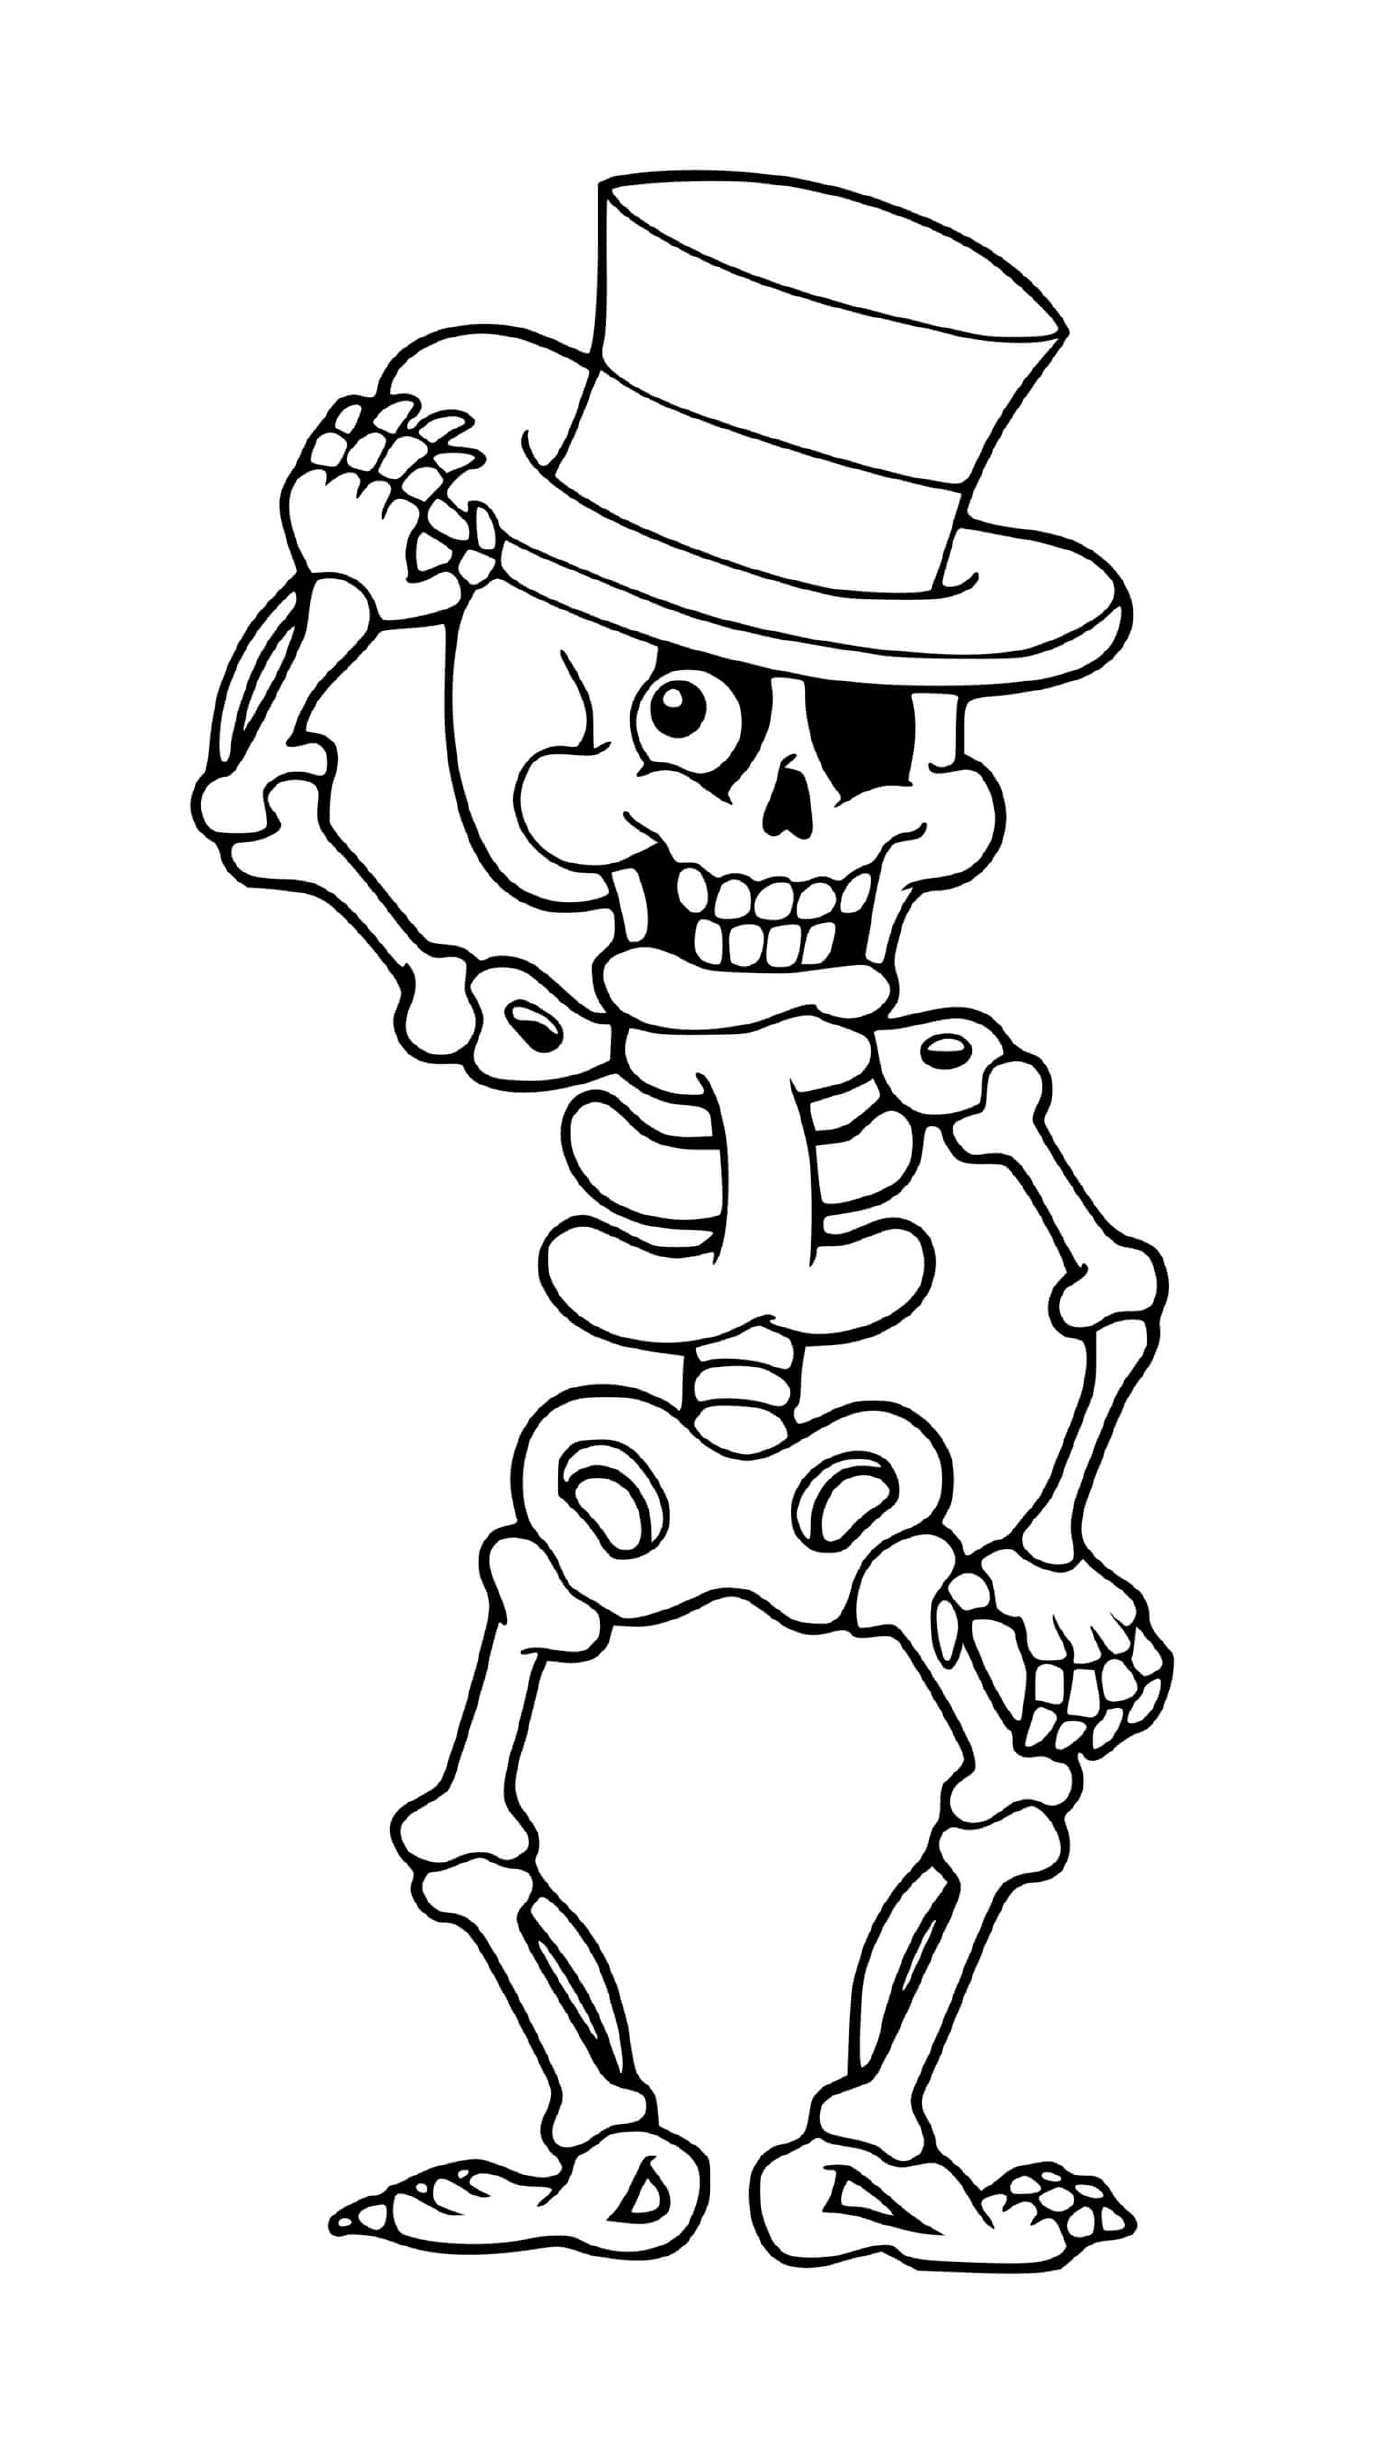  Весёлый скелет с шляпой 